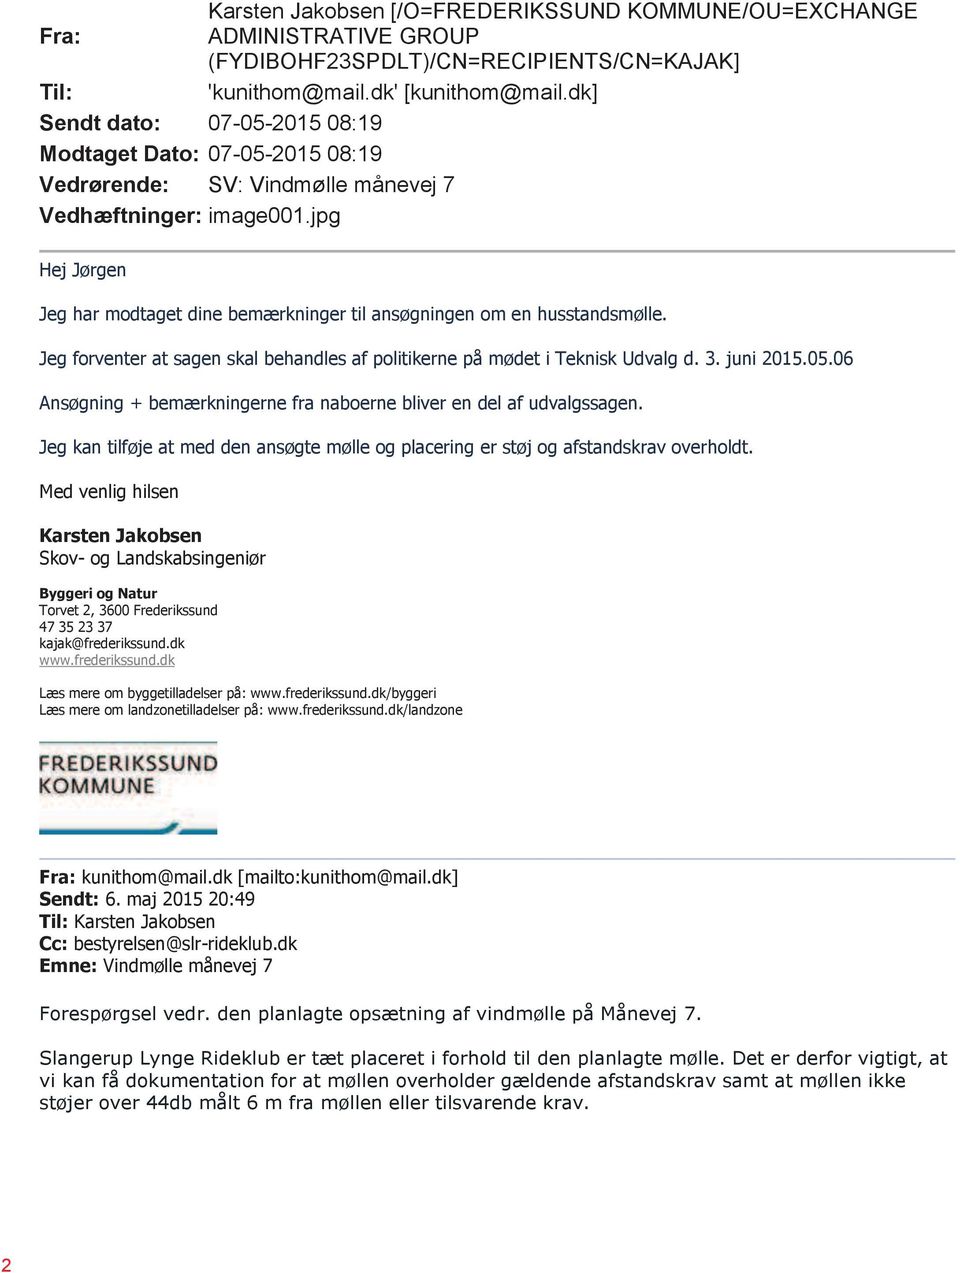 jpg Hej Jørgen Jeg har modtaget dine bemærkninger til ansøgningen om en husstandsmølle. Jeg forventer at sagen skal behandles af politikerne på mødet i Teknisk Udvalg d. 3. juni 2015.05.